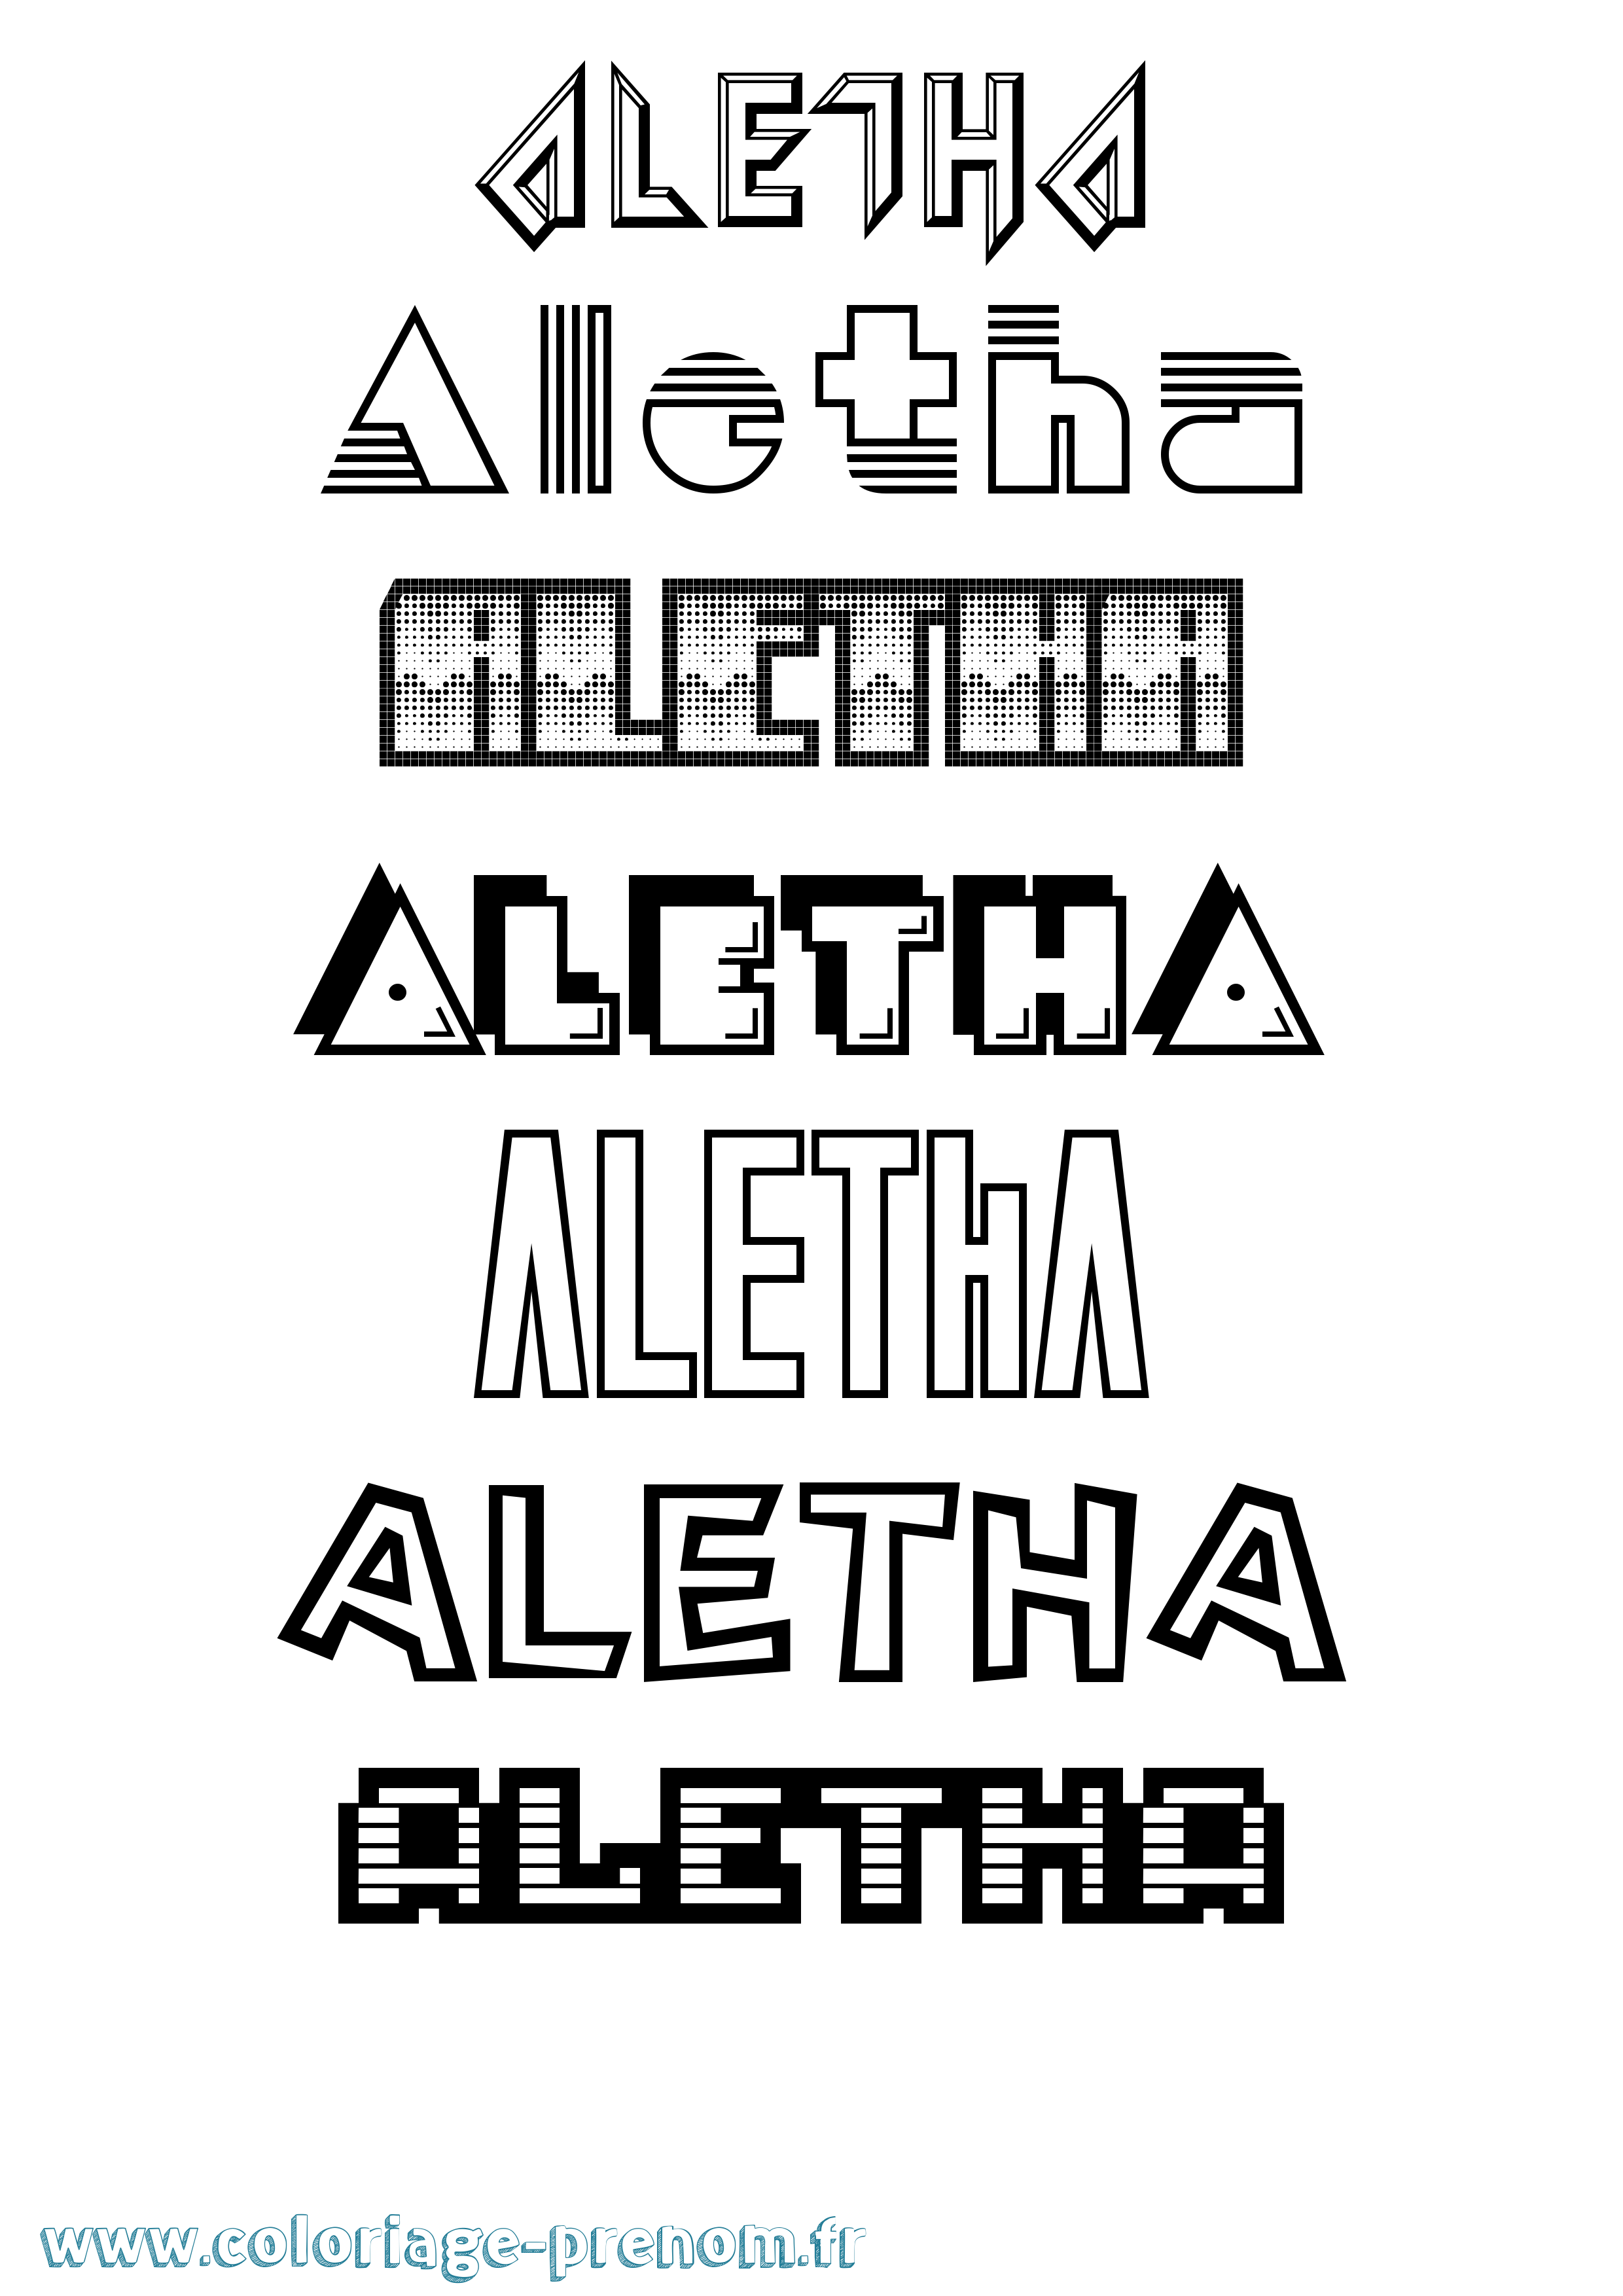 Coloriage prénom Aletha Jeux Vidéos